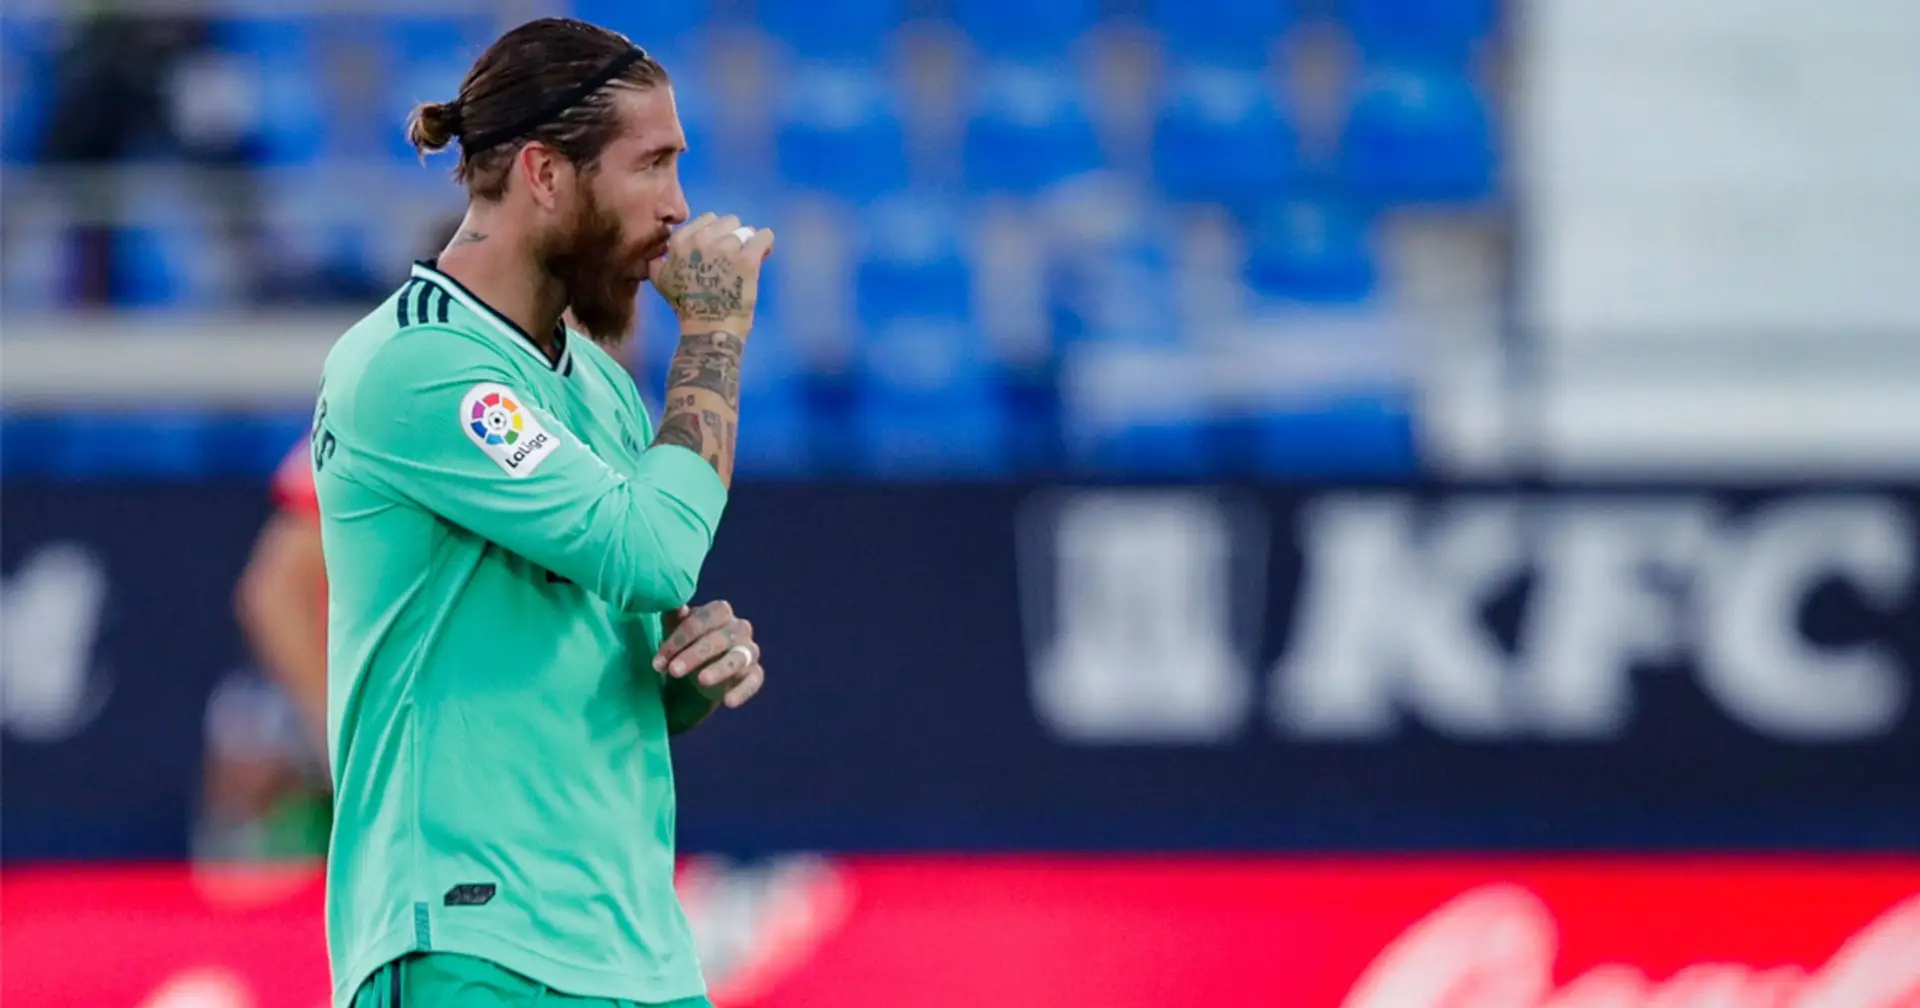 ✍ Ramos - 7.5, Vázquez - 4: Las notas de los jugadores al descanso del Leganés - Real Madrid